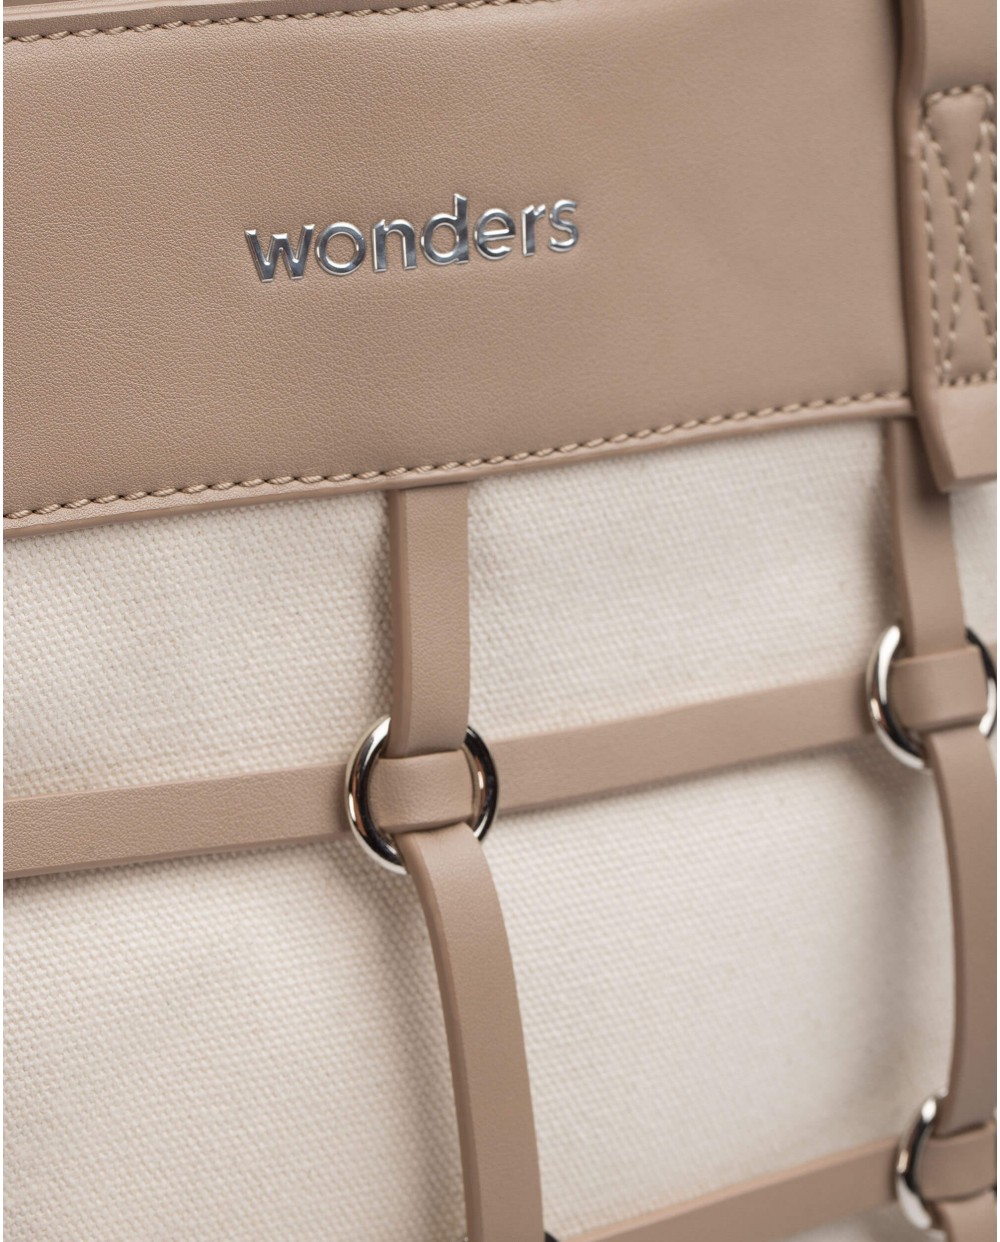 Wonders-Totes-Brown LUPE Bag